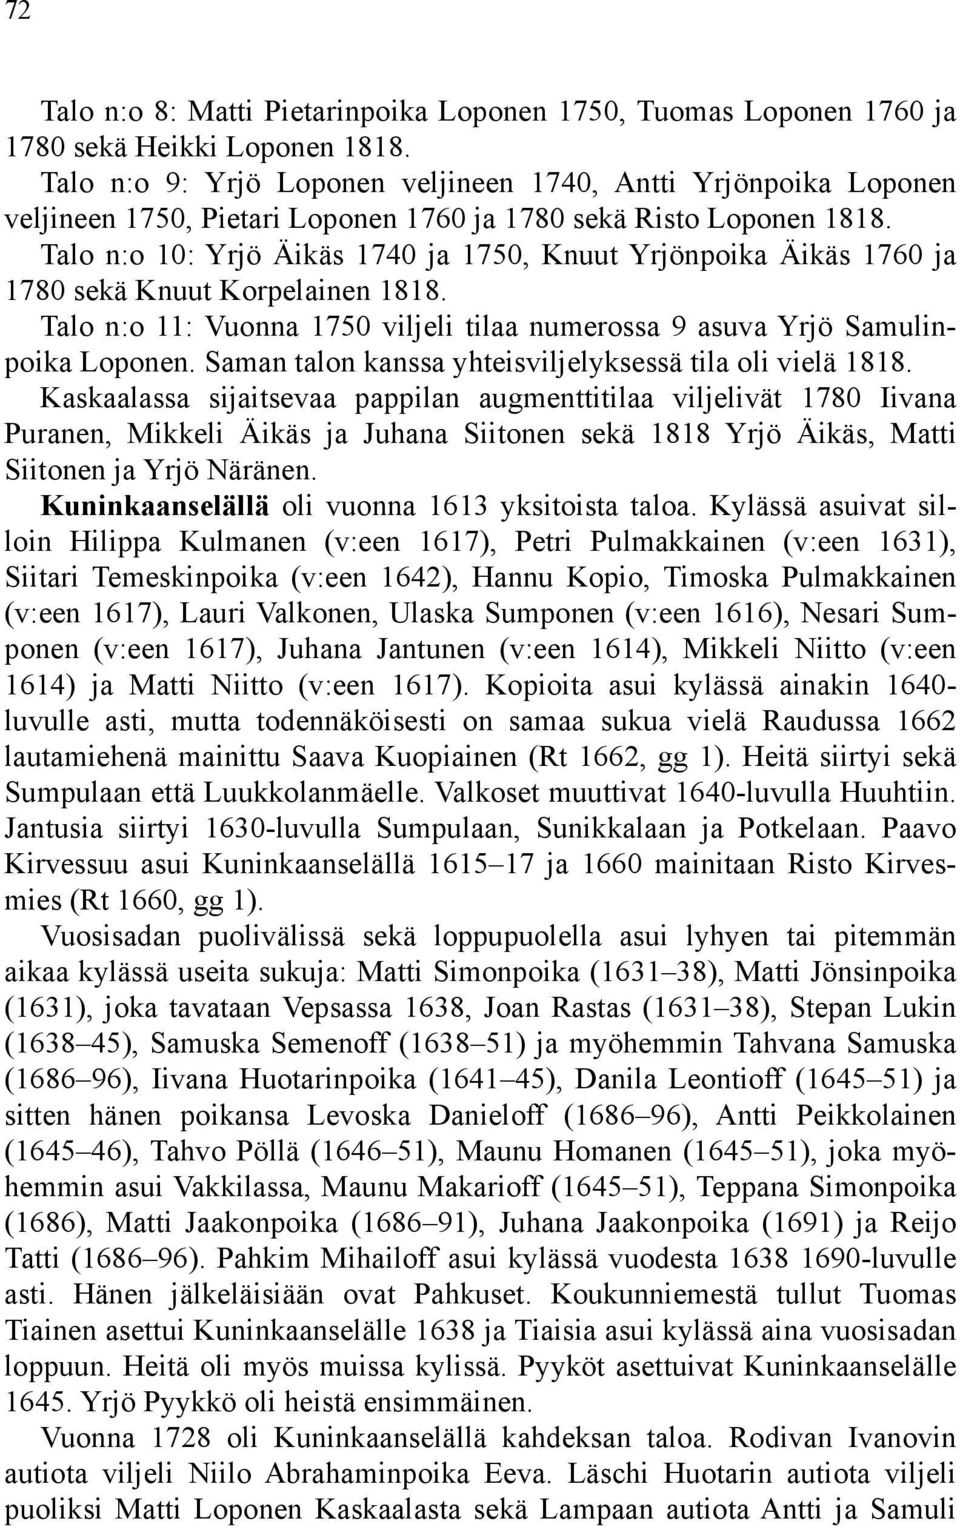 Talo n:o 10: Yrjö Äikäs 1740 ja 1750, Knuut Yrjönpoika Äikäs 1760 ja 1780 sekä Knuut Korpelainen 1818. Talo n:o 11: Vuonna 1750 viljeli tilaa numerossa 9 asuva Yrjö Samulinpoika Loponen.